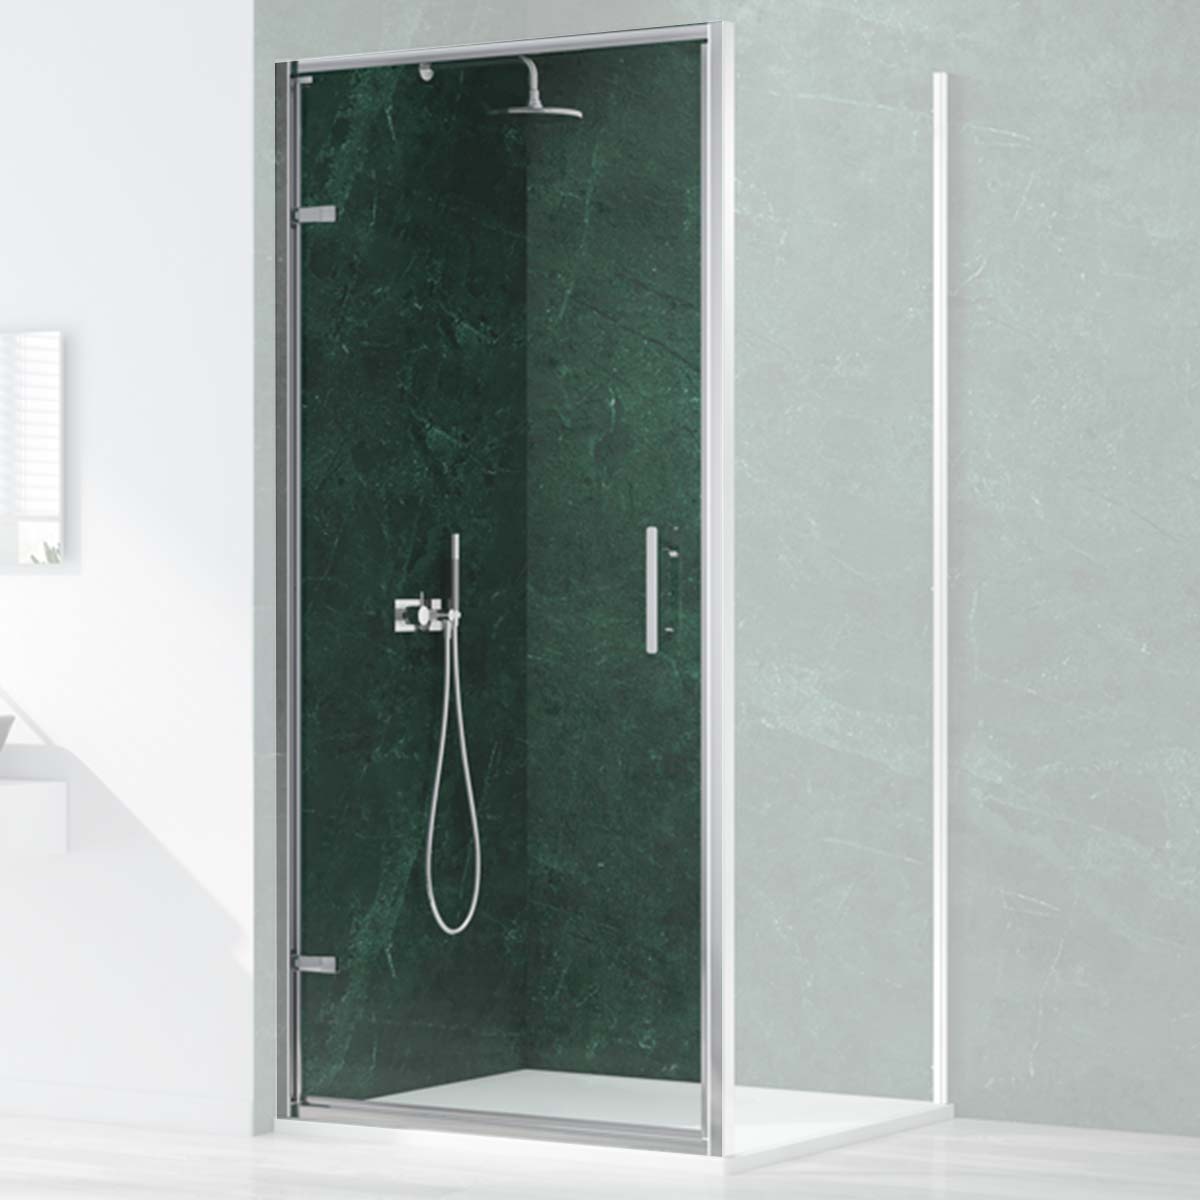 Merlyn 6 Series Sleek Hinged Shower Door Chrome